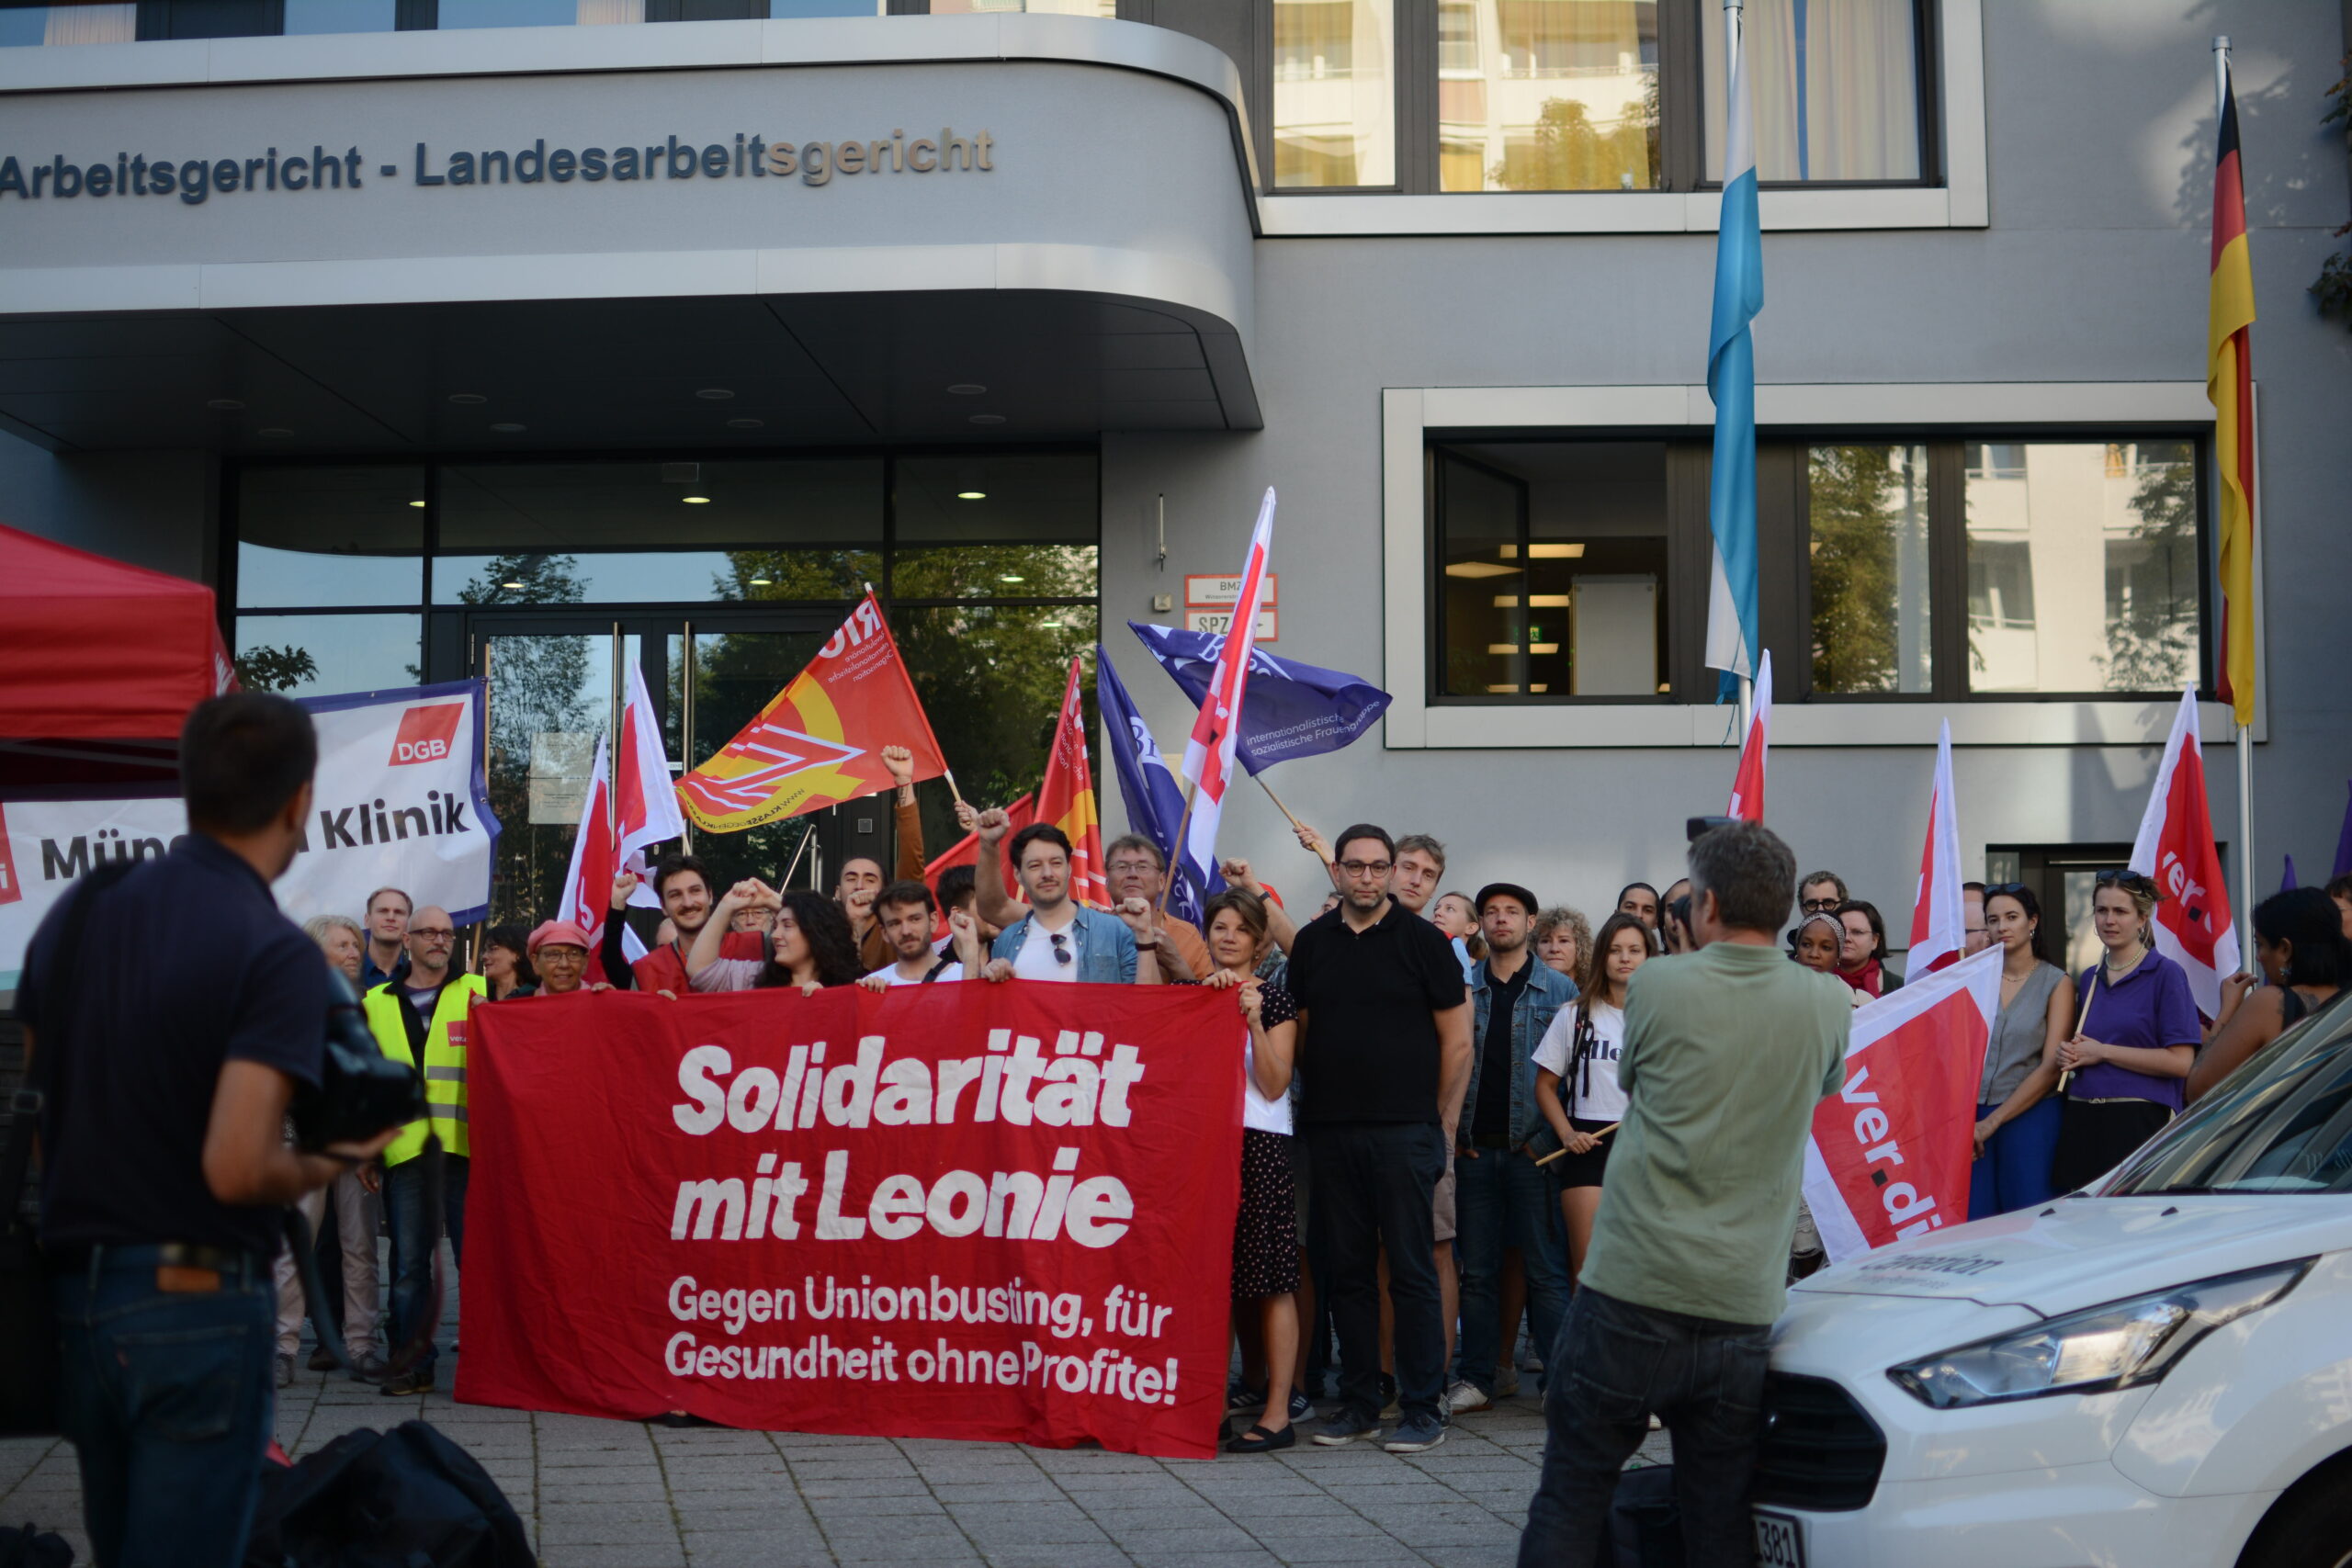 München: Kundgebung gegen Union Busting – viel Solidarität für Leonie